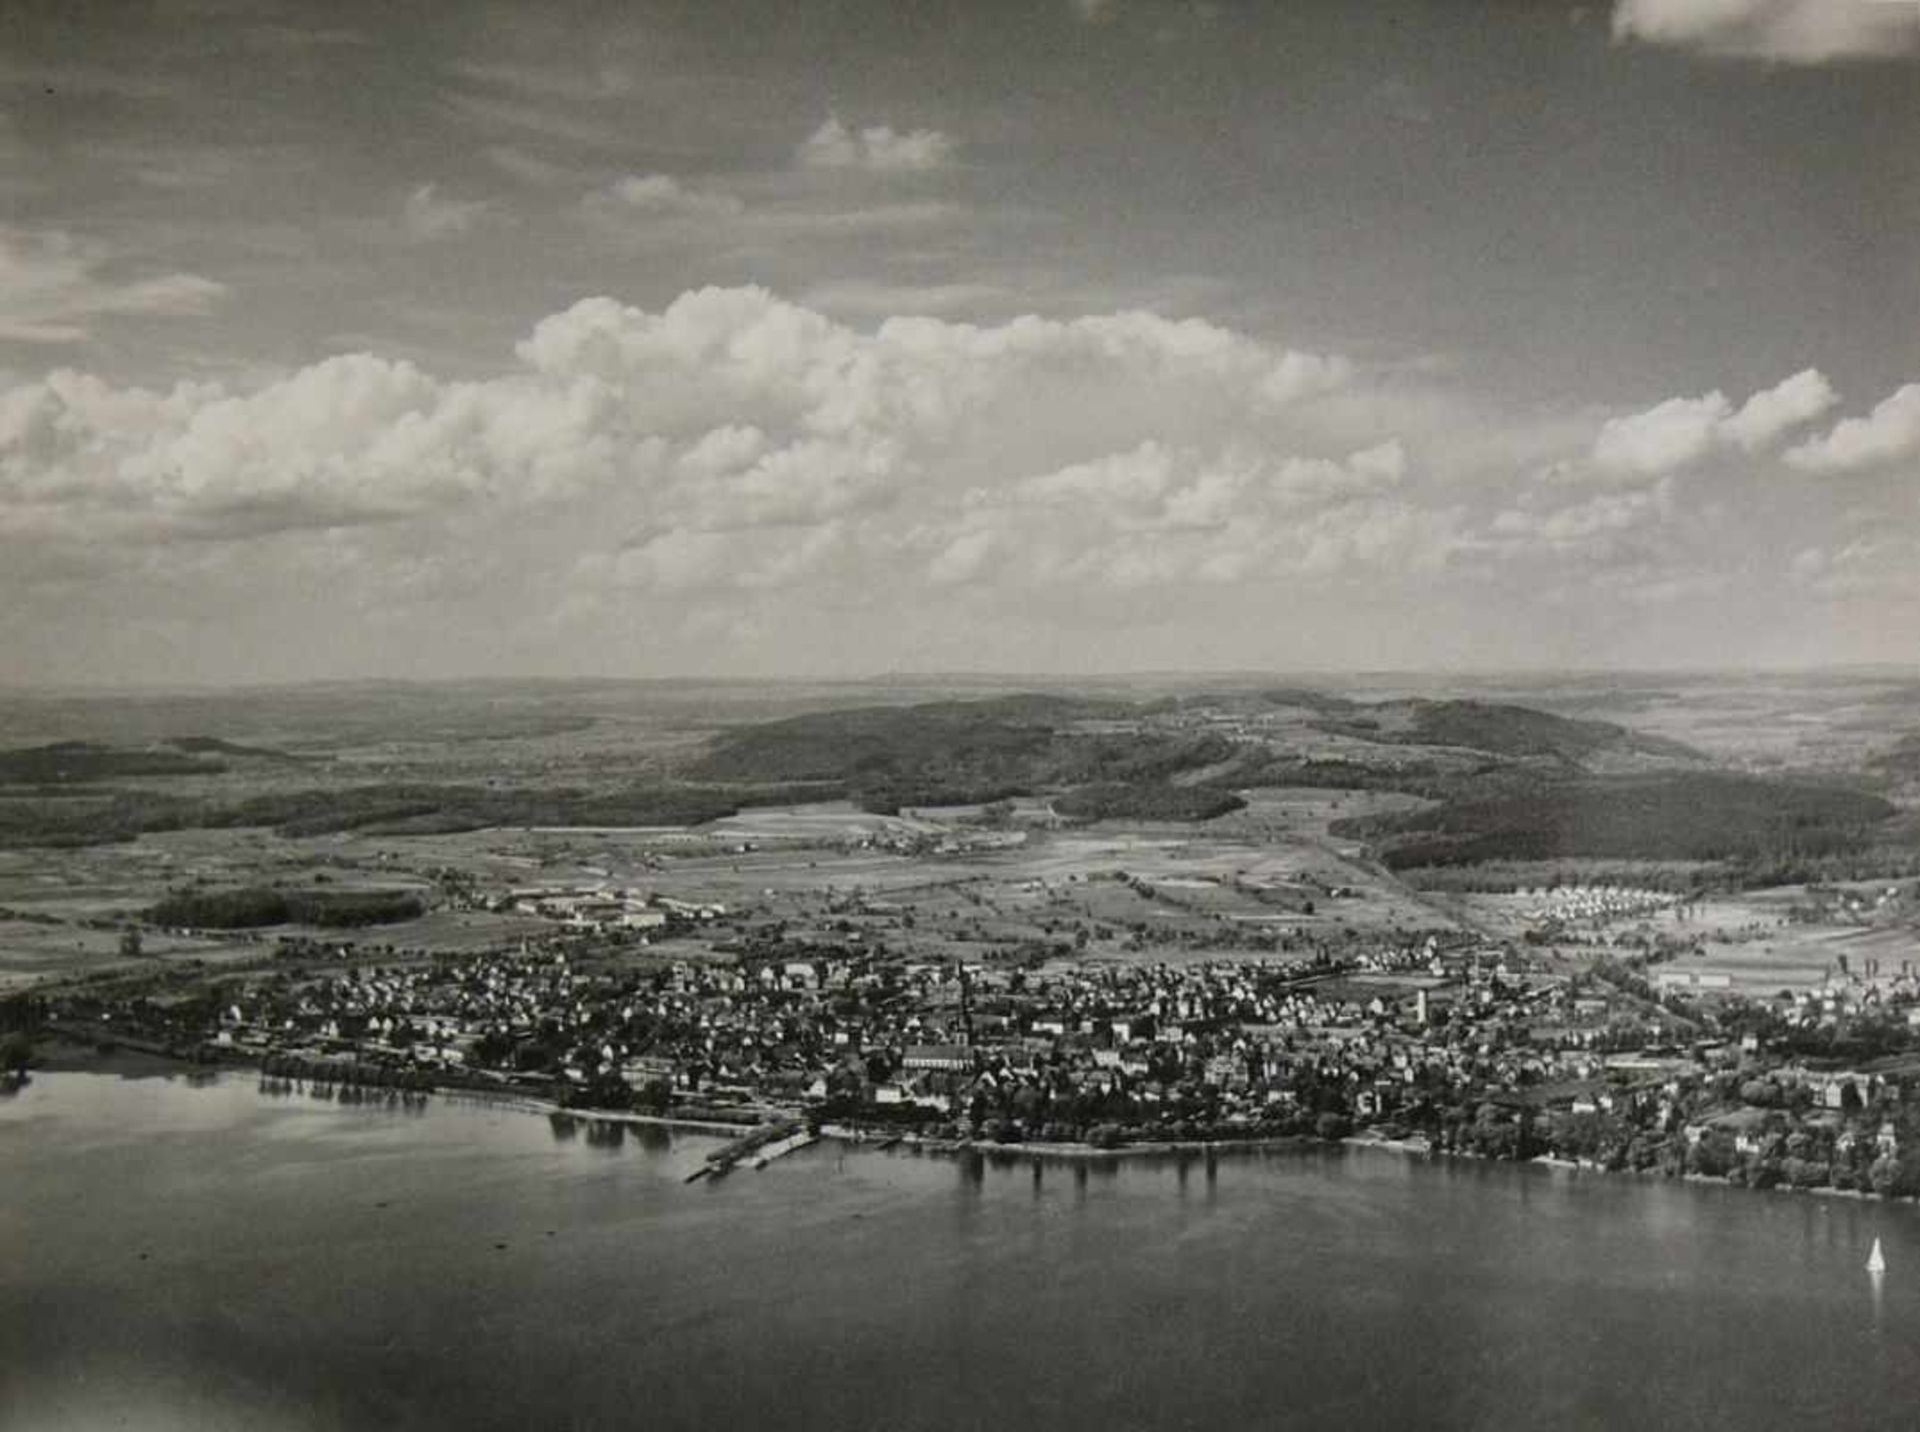 Siegfried Lauterwasser11 schwarz/weiß Fotos mit Bodensee-Motiven; je 18 x 24 cm; ca. Mitte 20.Jh. - Bild 5 aus 6